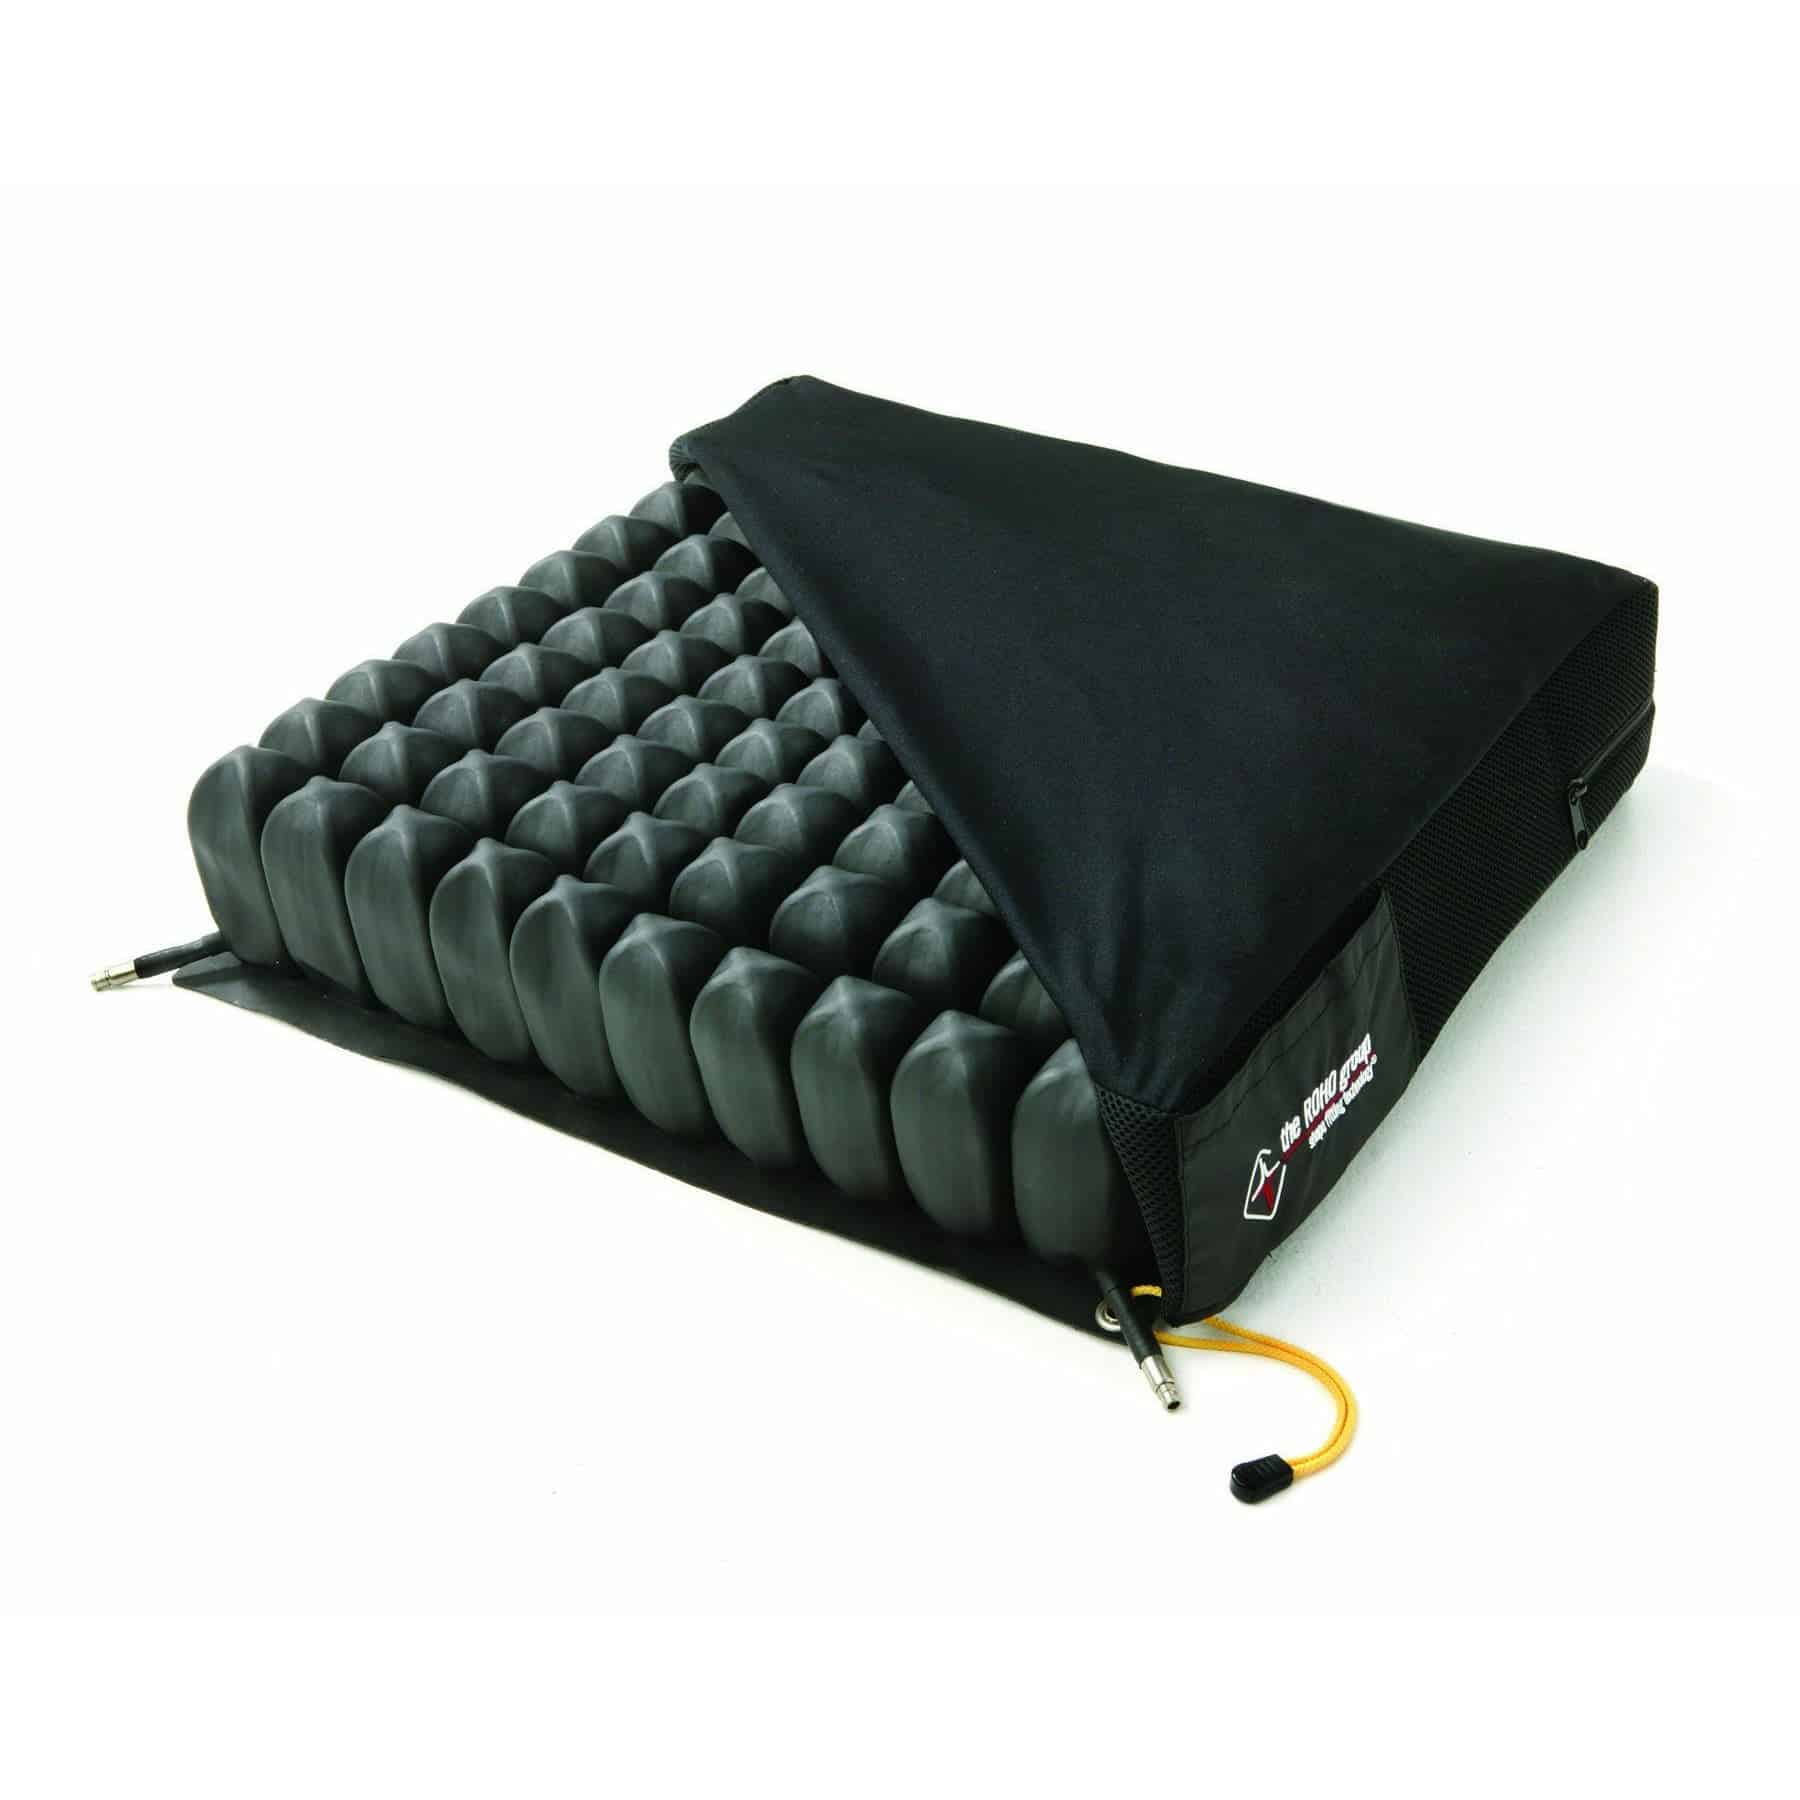 Roho Low Profile Single Compartment Cushion